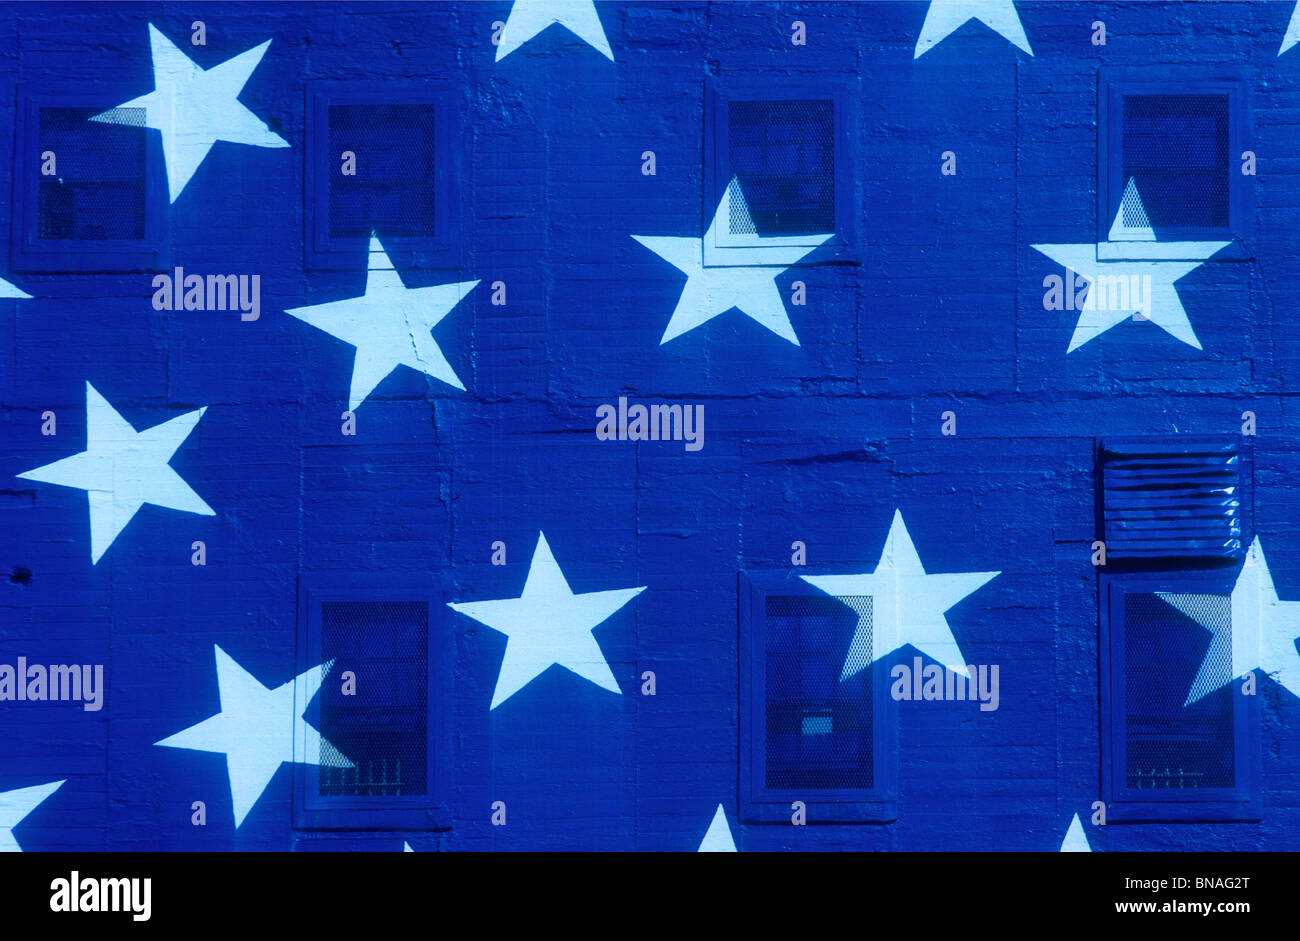 Drapeau américain étoiles peintes sur des capacités voir autre photo de rayures Banque D'Images